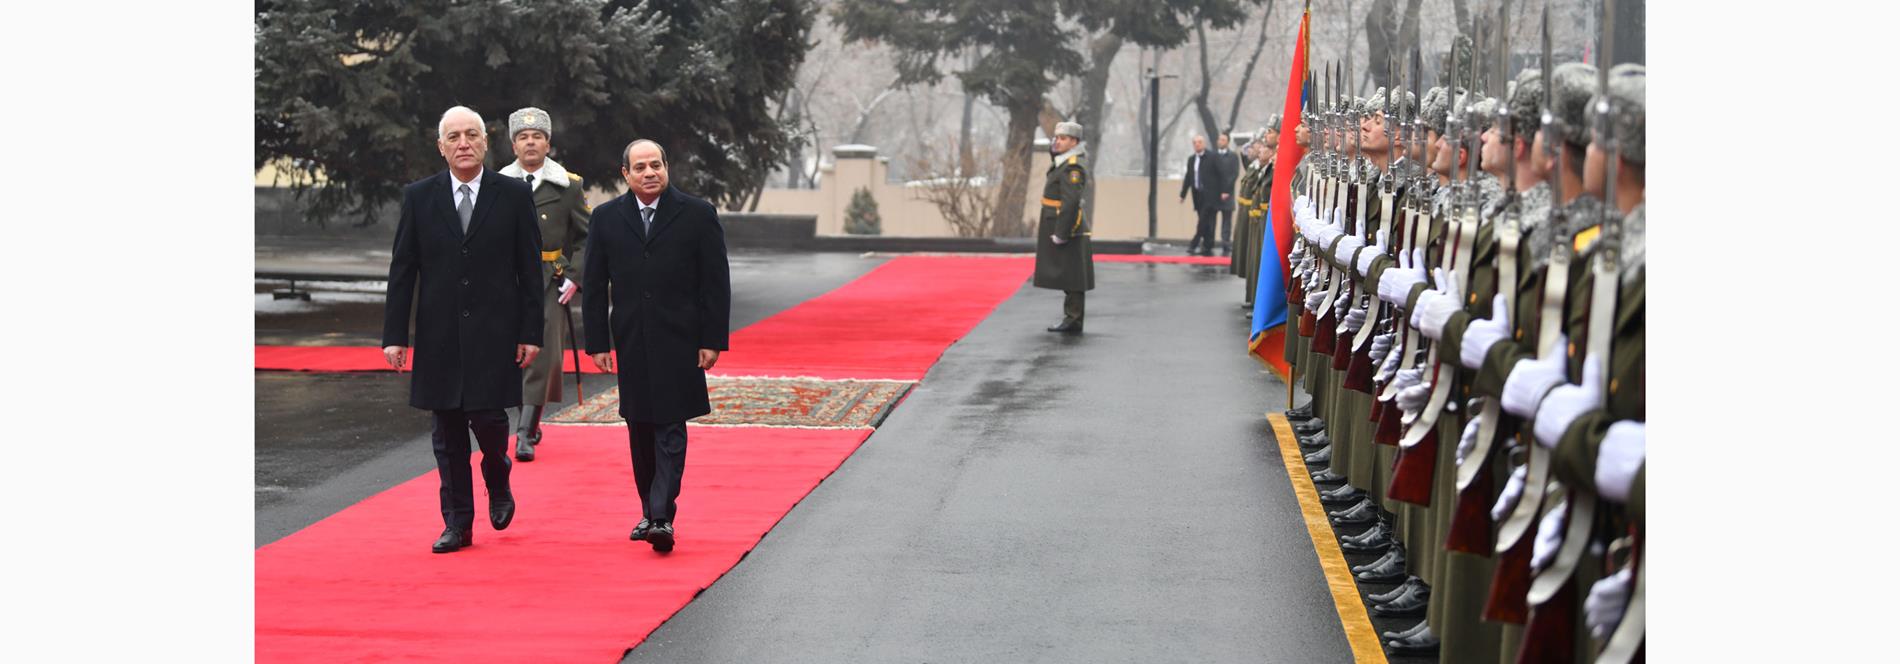 الرئيس عبد الفتاح السيسي يلتقي رئيس جمهورية أرمينيا بالقصر الرئاسي في العاصمة الأرمينية يريفان